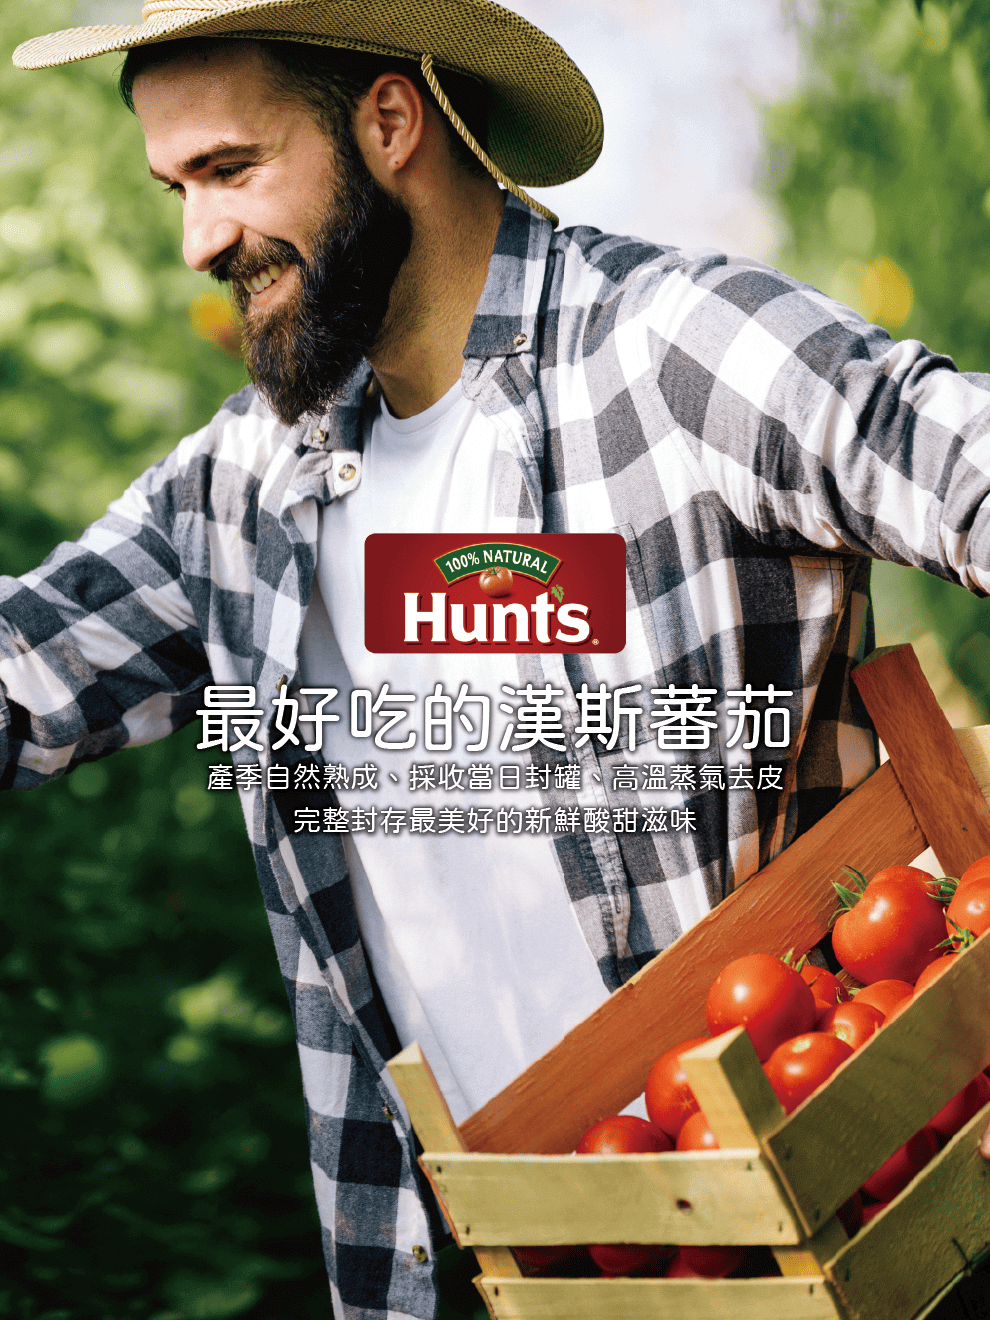 【美國】Hunt's 漢斯蕃茄製品，產季自然熟成、採收當日封罐、高溫蒸氣去皮，完整封存新鮮酸甜